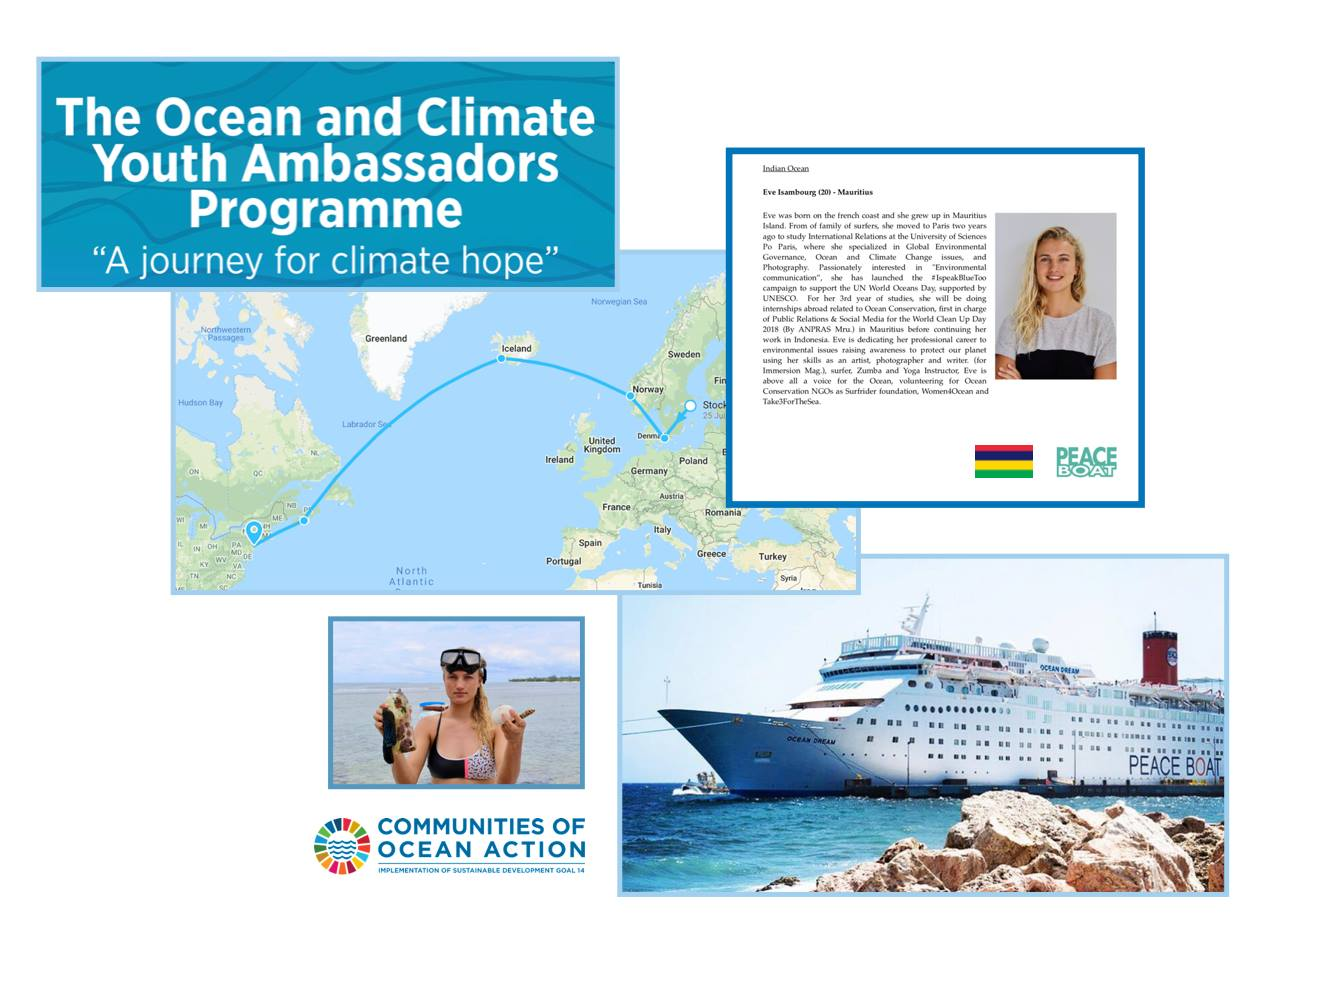 Eve Isambourg ambassadrice sur le Peace Boat Ecoship pour représenter l'ile maurice